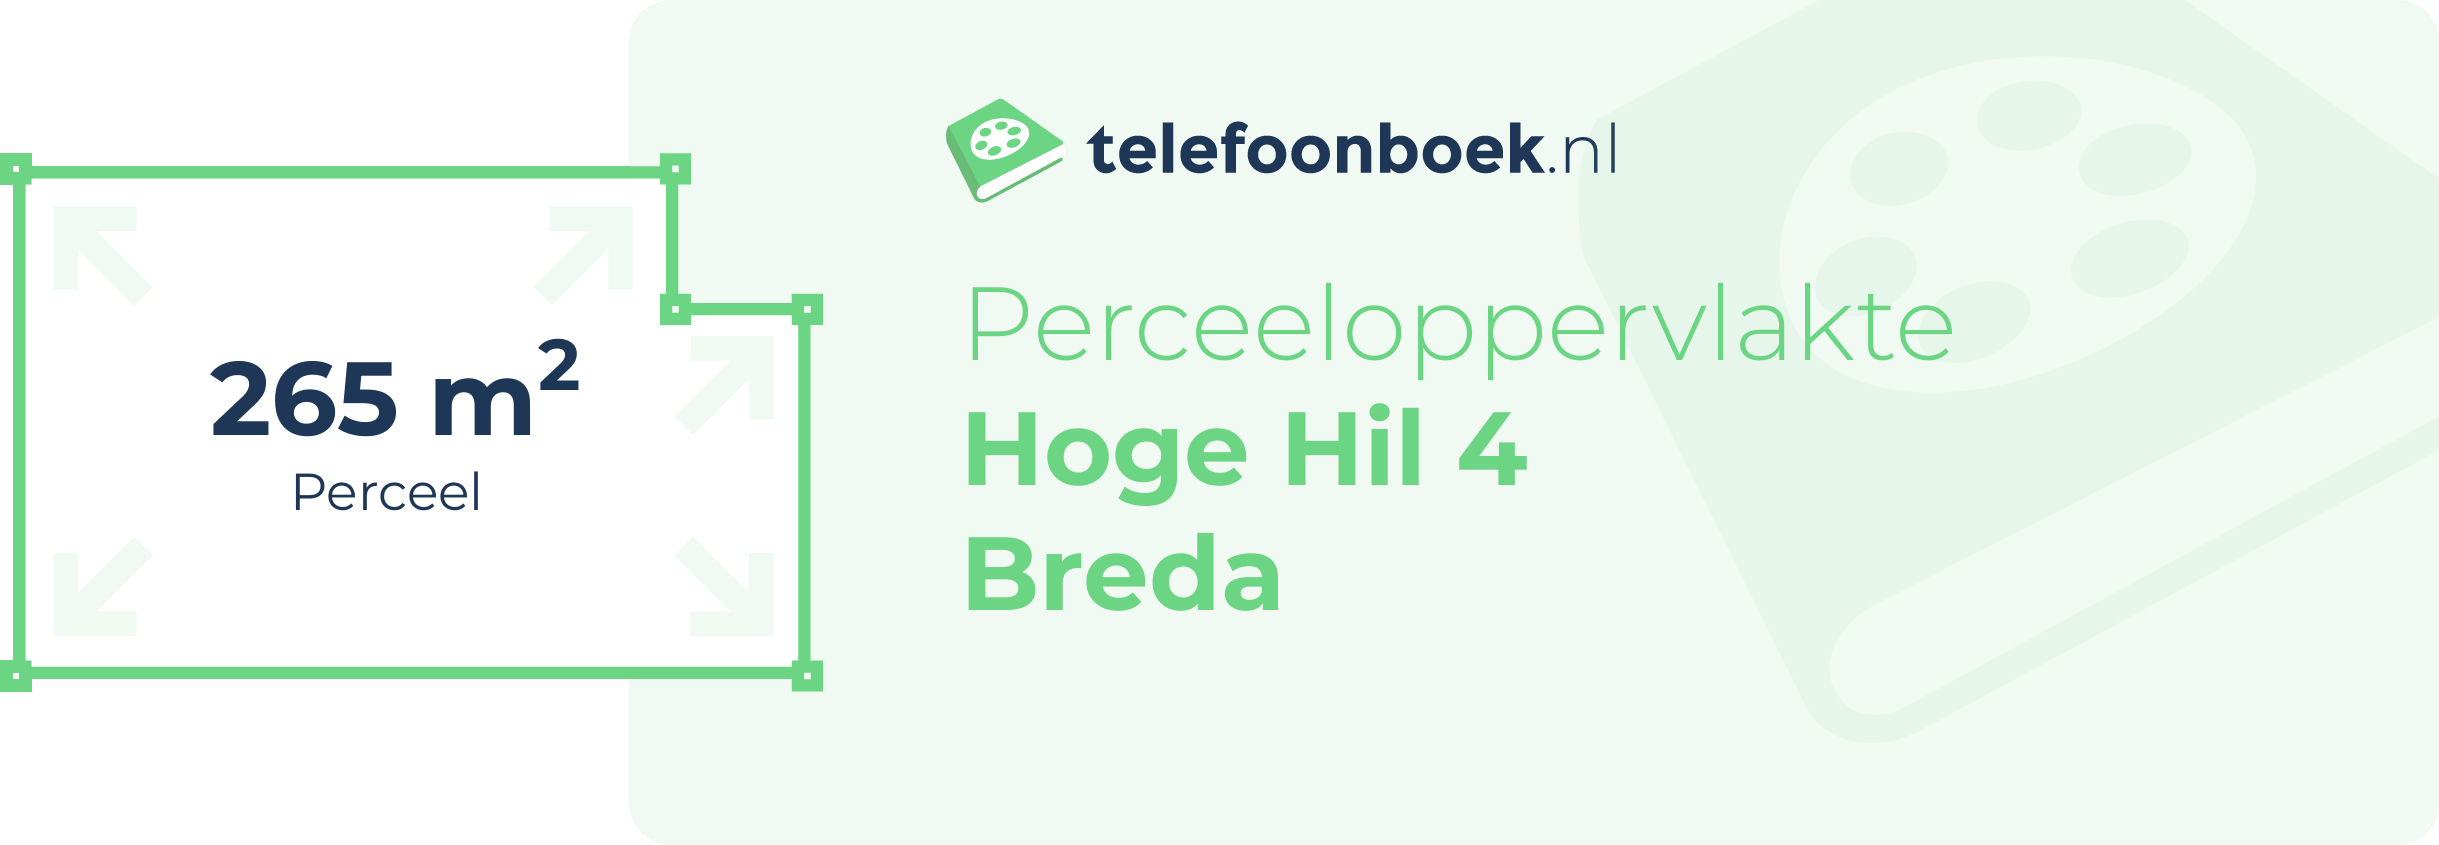 Perceeloppervlakte Hoge Hil 4 Breda